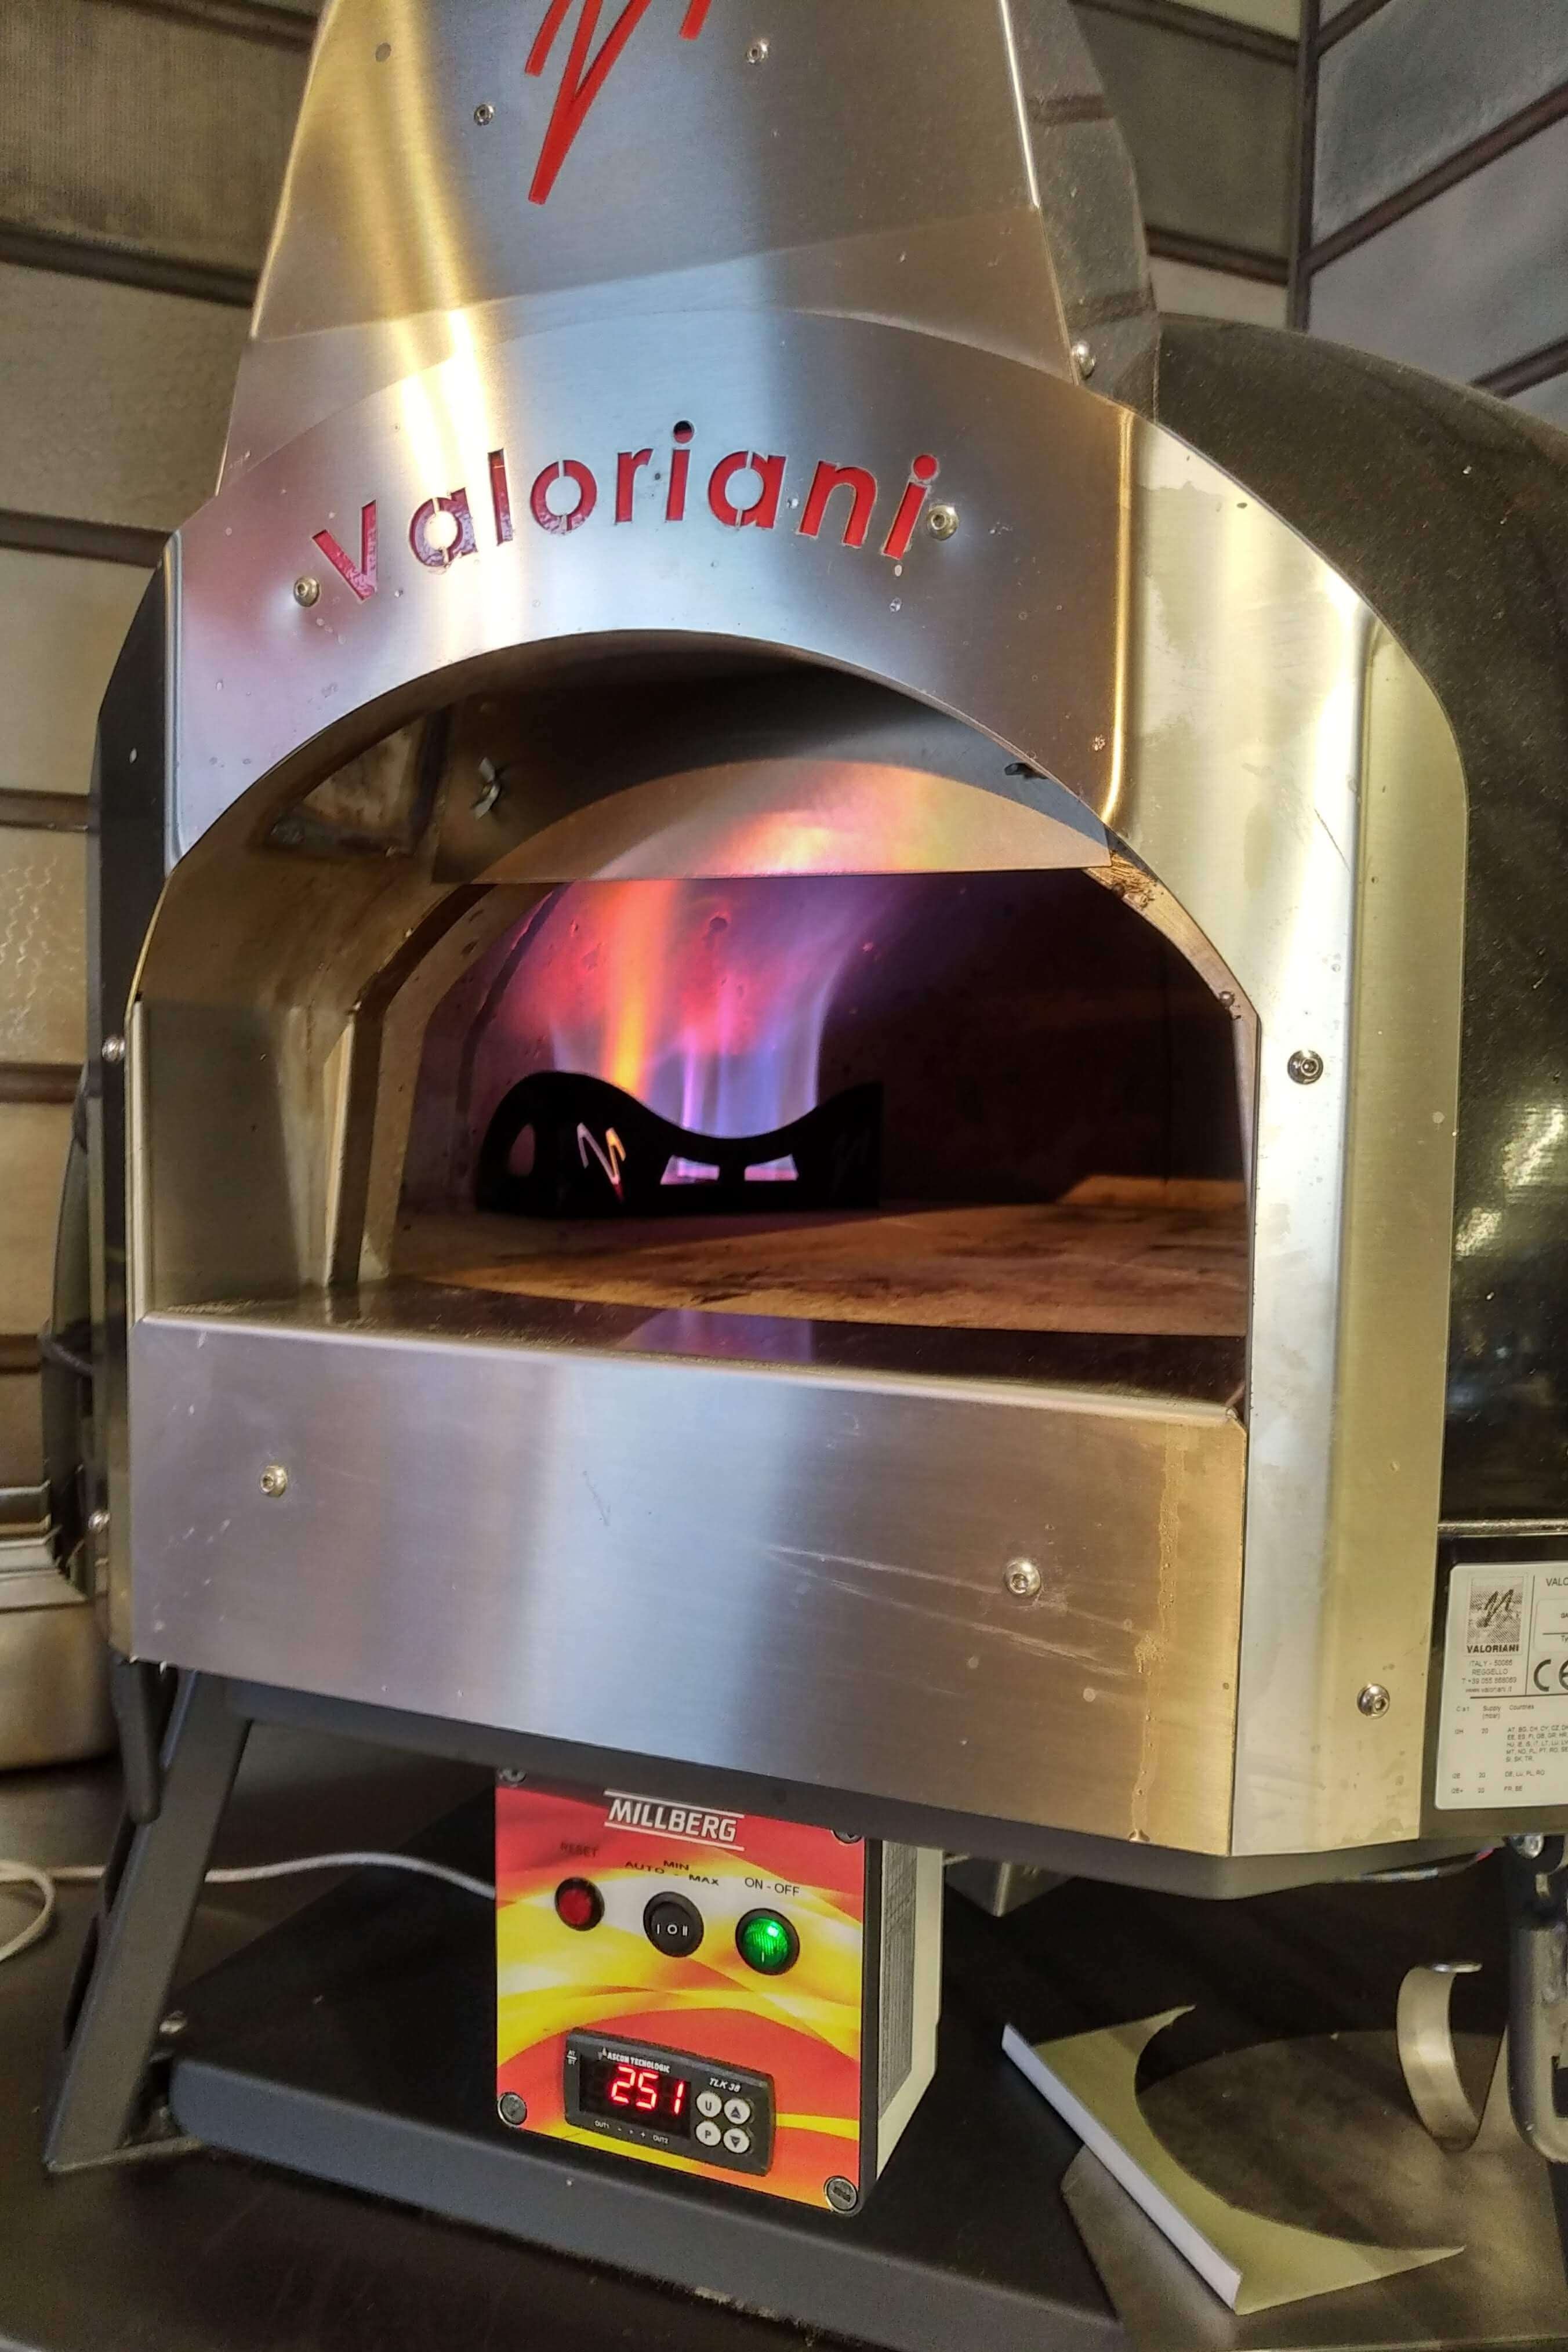 Valoriani Baby: Pizzaofen mit Holzbefeuerung, 75cm Durchmesser, inkl. 1.Basis, schwarz